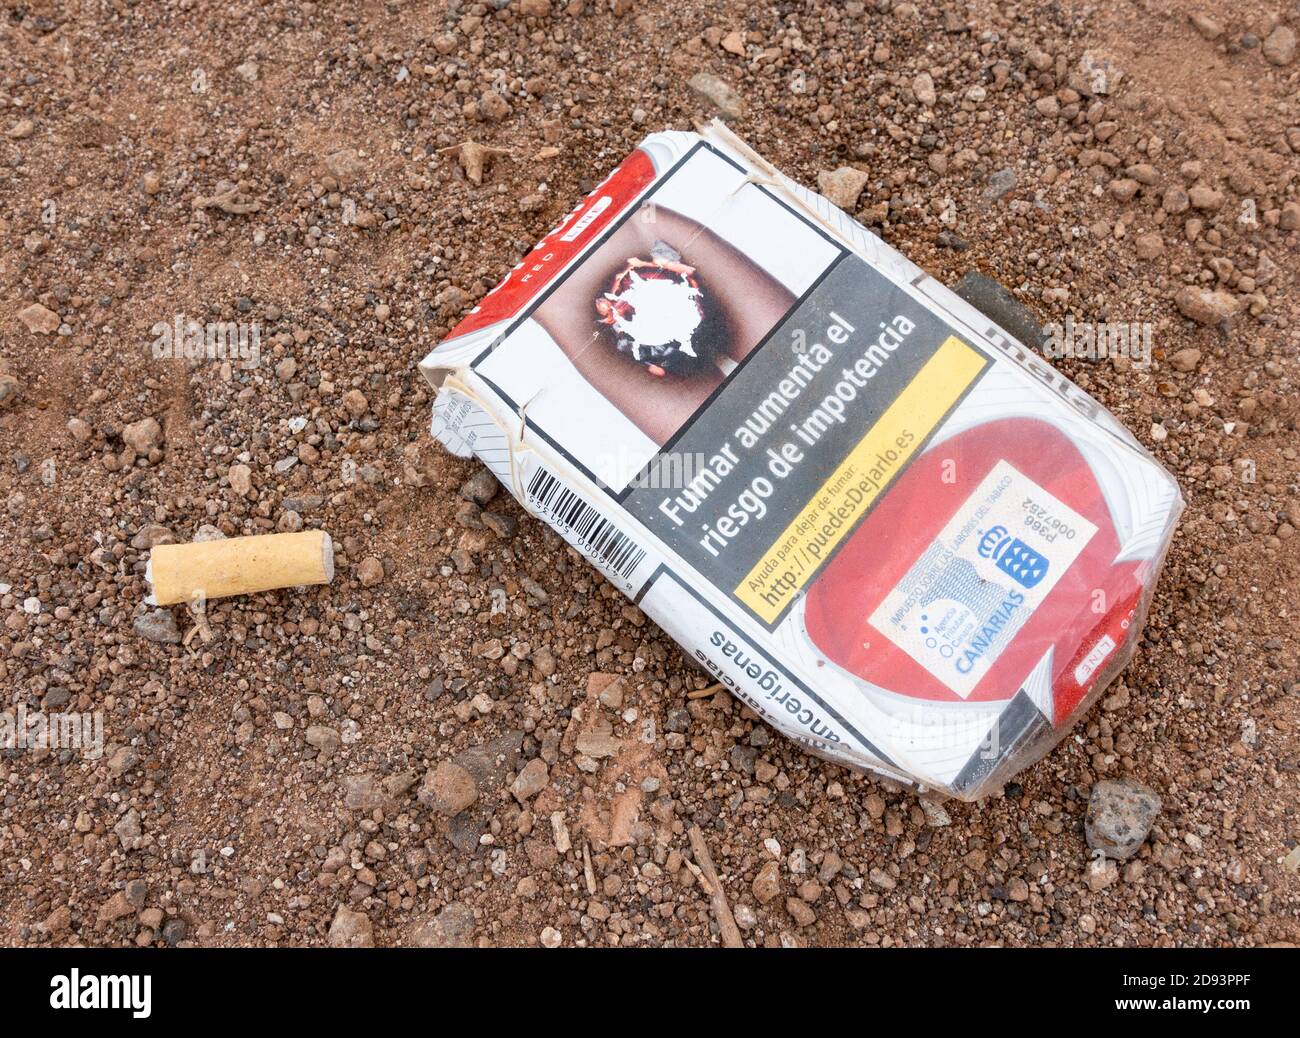 Immagine grafica, avviso di salute su pacchetto vuoto di sigarette in Spagna Foto Stock